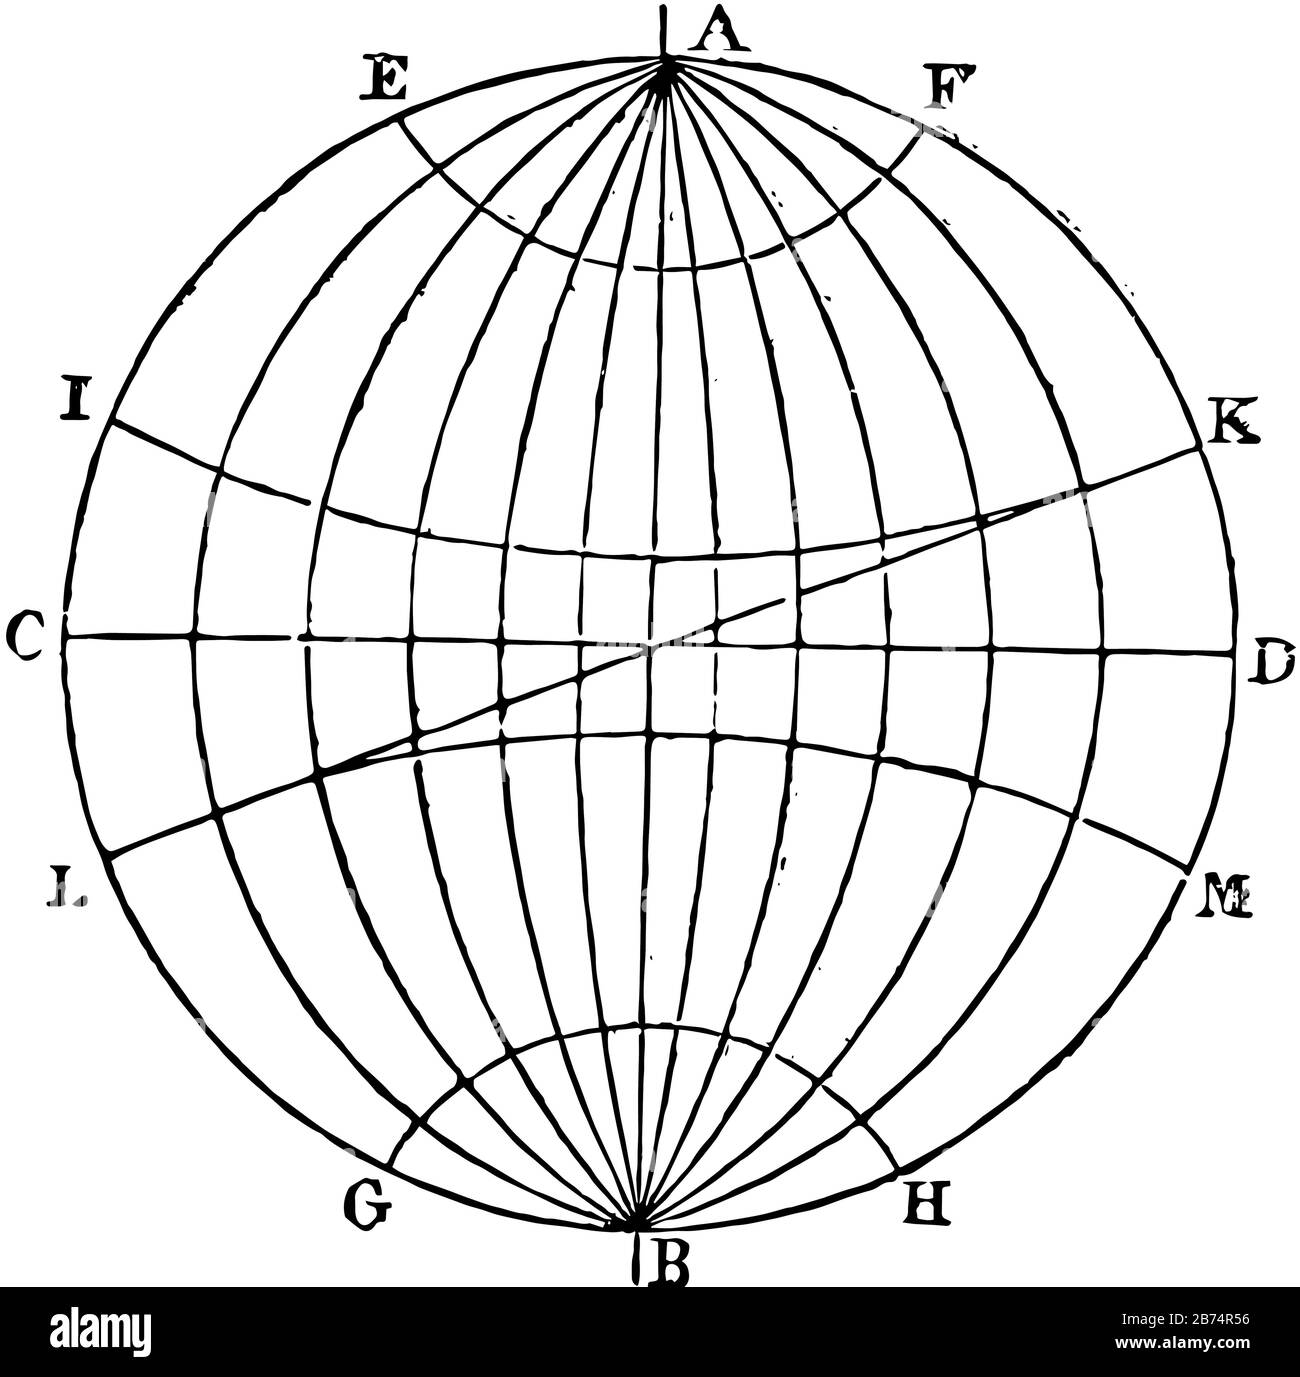 La Terra il cui diametro è di 7,912 miglia ed è rappresentata dal globo o sfera, disegno di linea vintage o illustrazione di incisione. Illustrazione Vettoriale